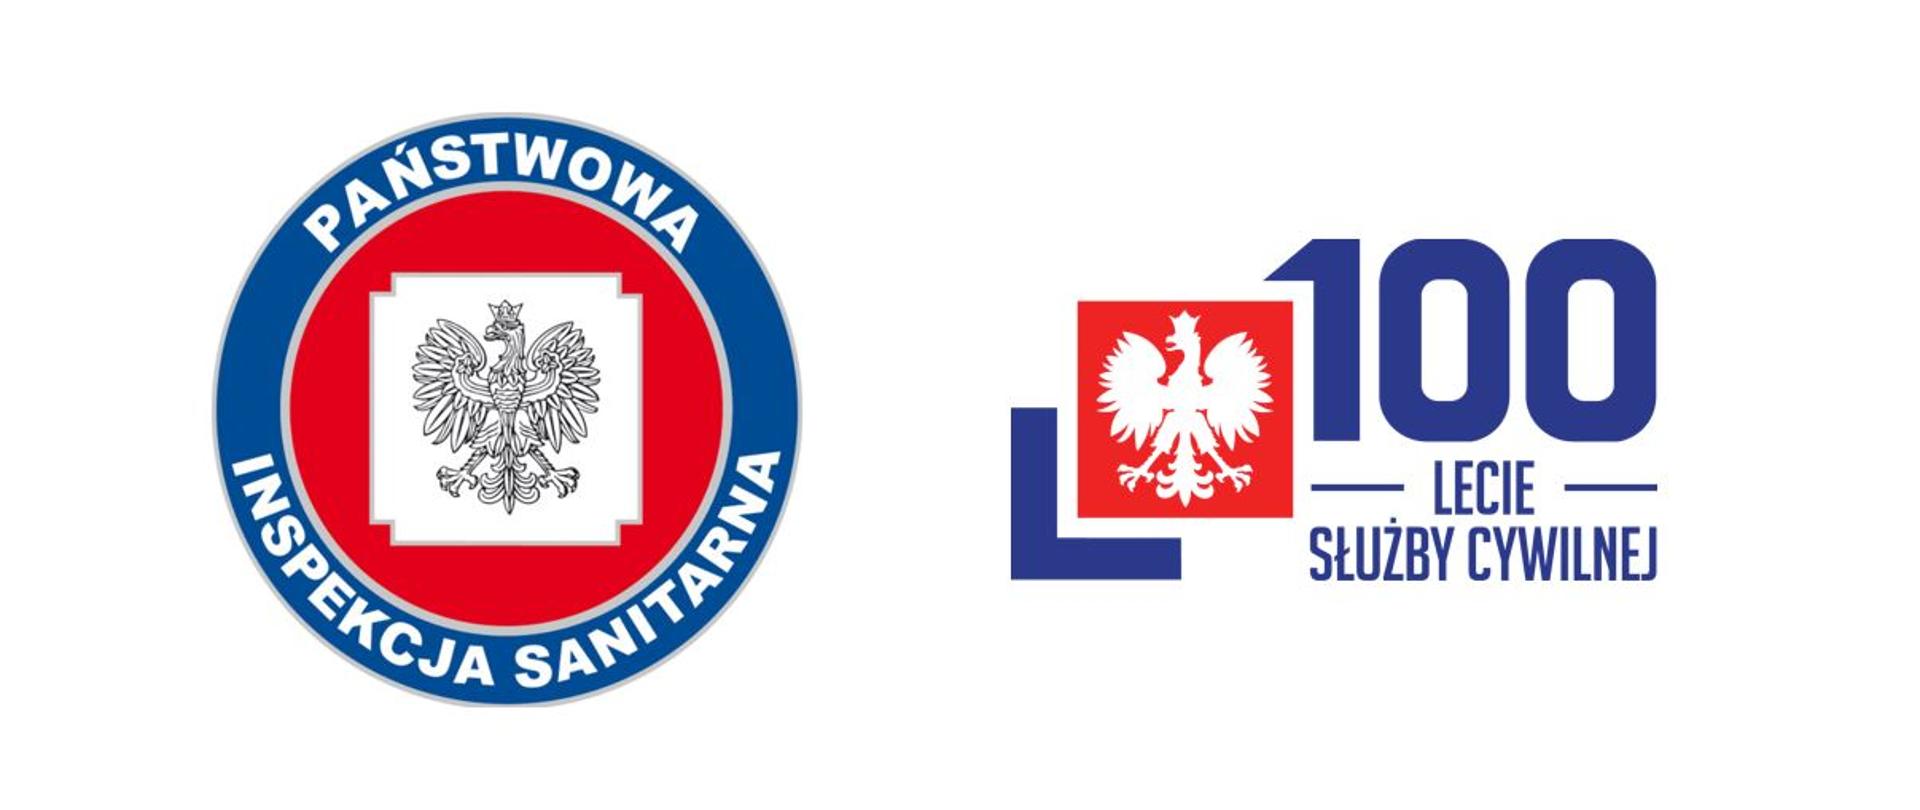 Po lewej stronie znajduje się logo Państwowej Inspekcji Sanitarnej - okrągłe logo czerwono-granatowe w środku orzeł, po prawej stronie logo 100-lecia służby cywilnej.